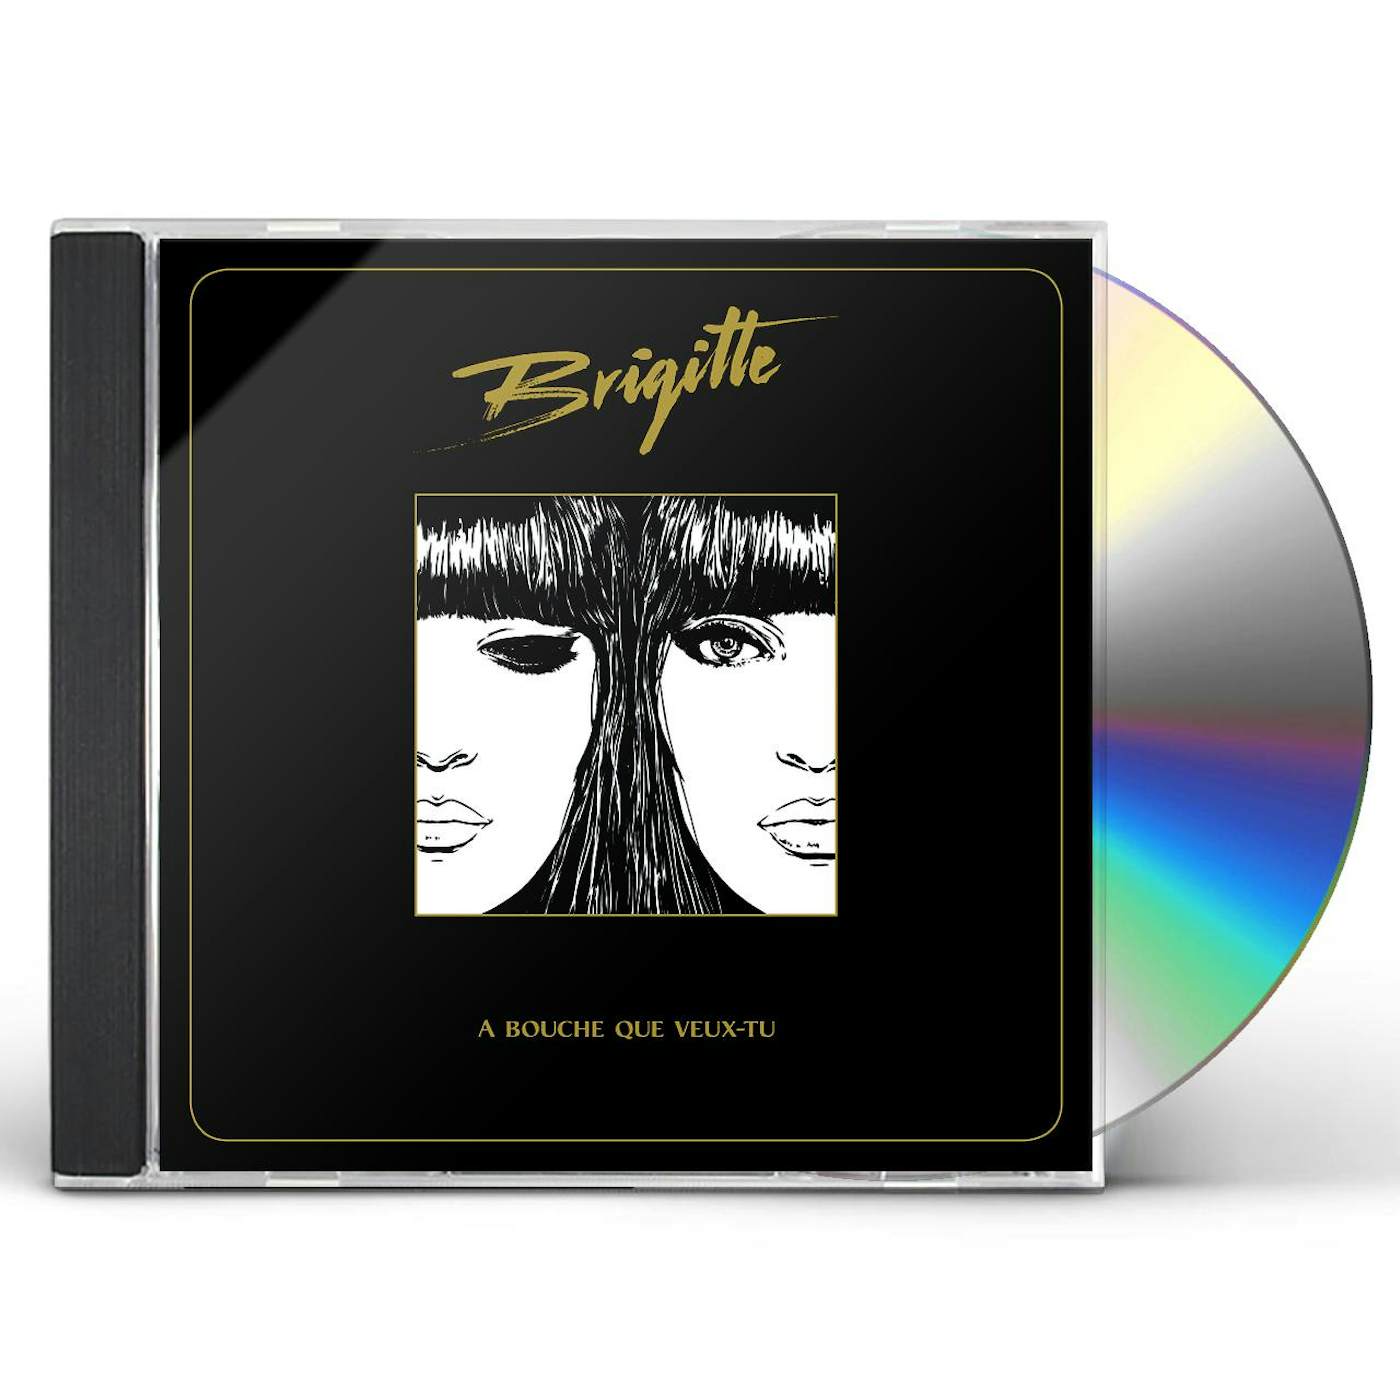 Brigitte BOUCHE QUE VEUX-TU CD